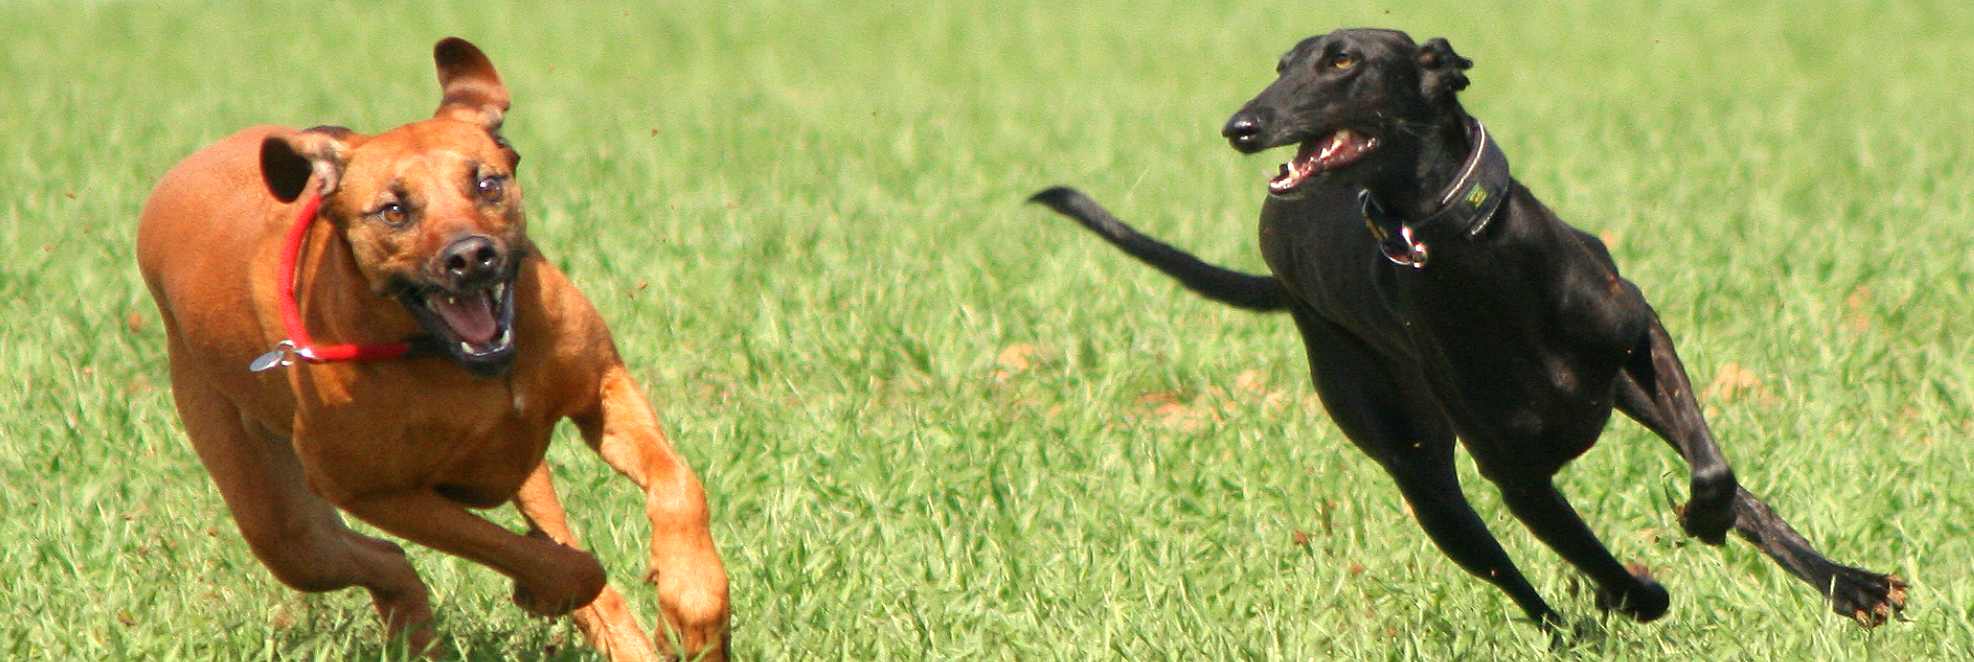 hunde jagen Bwegeung rennen artgerechte Haltung